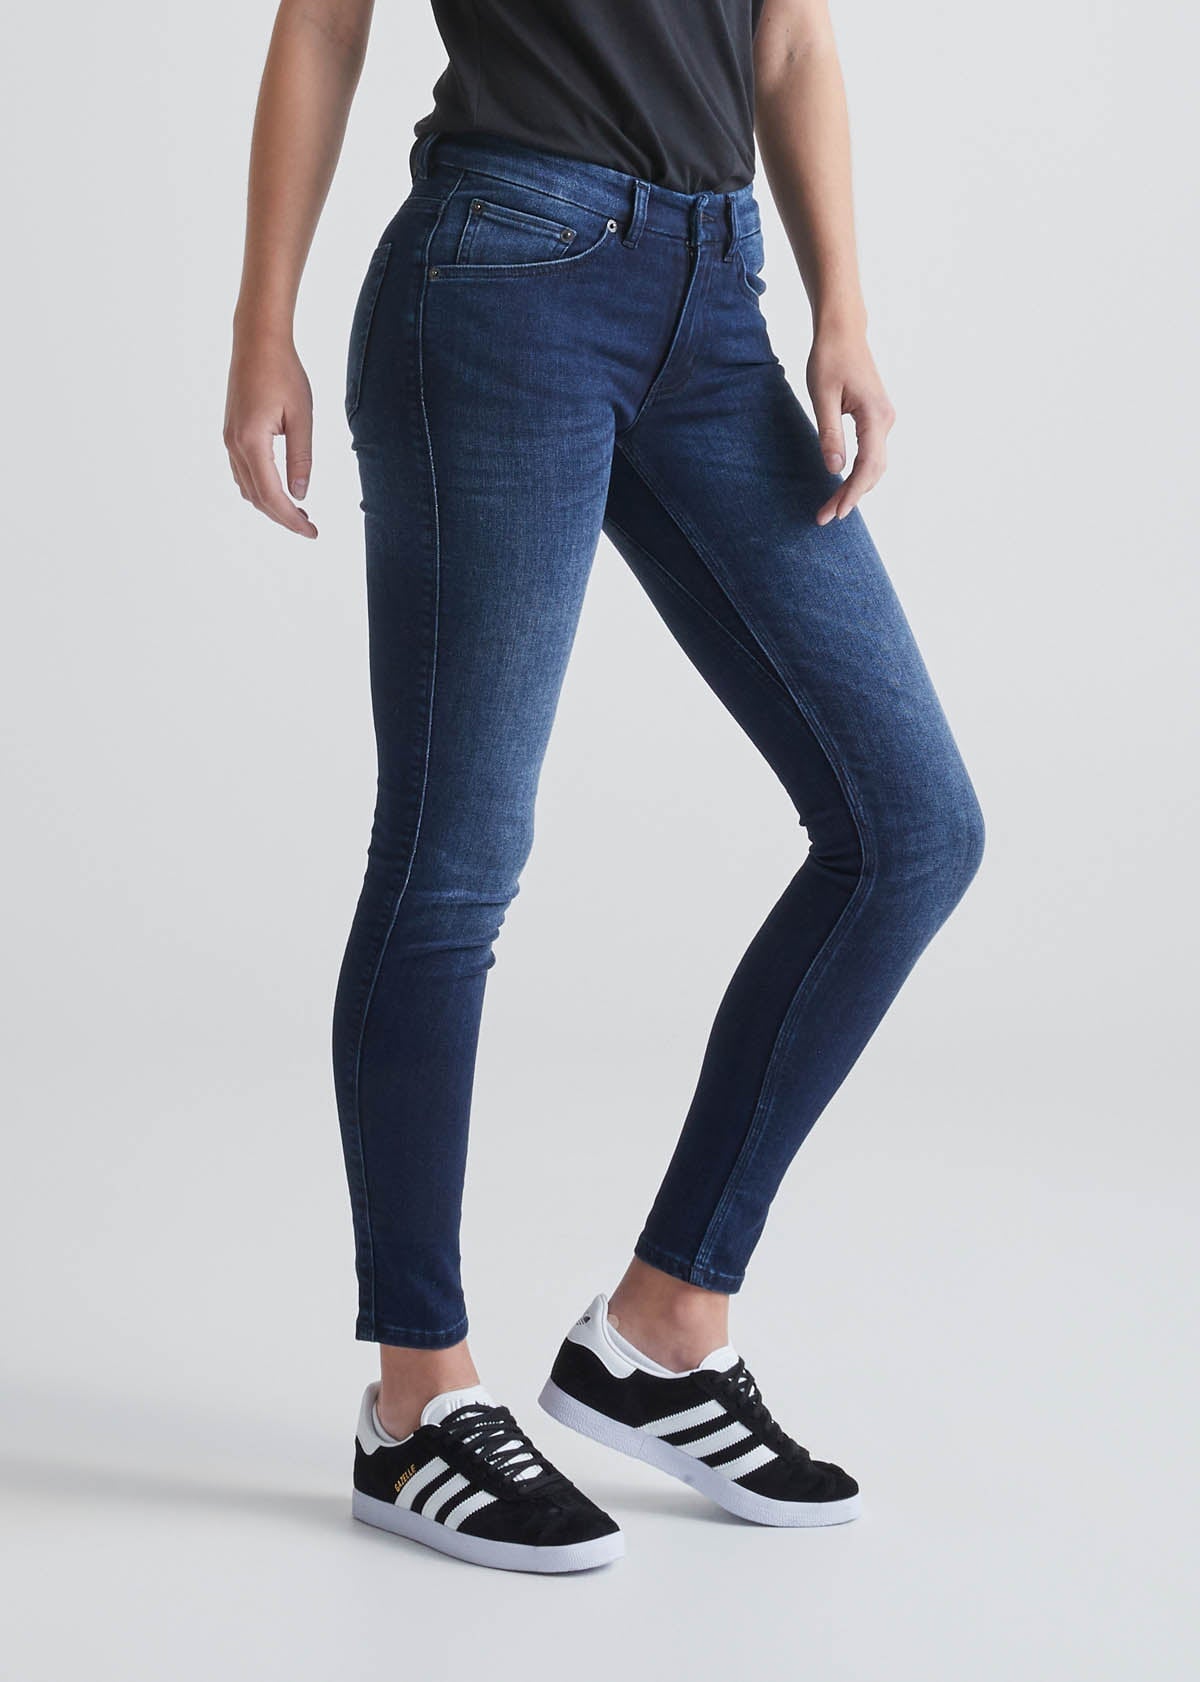 Women's Dark Wash Skinny Fit Stretch Jeans